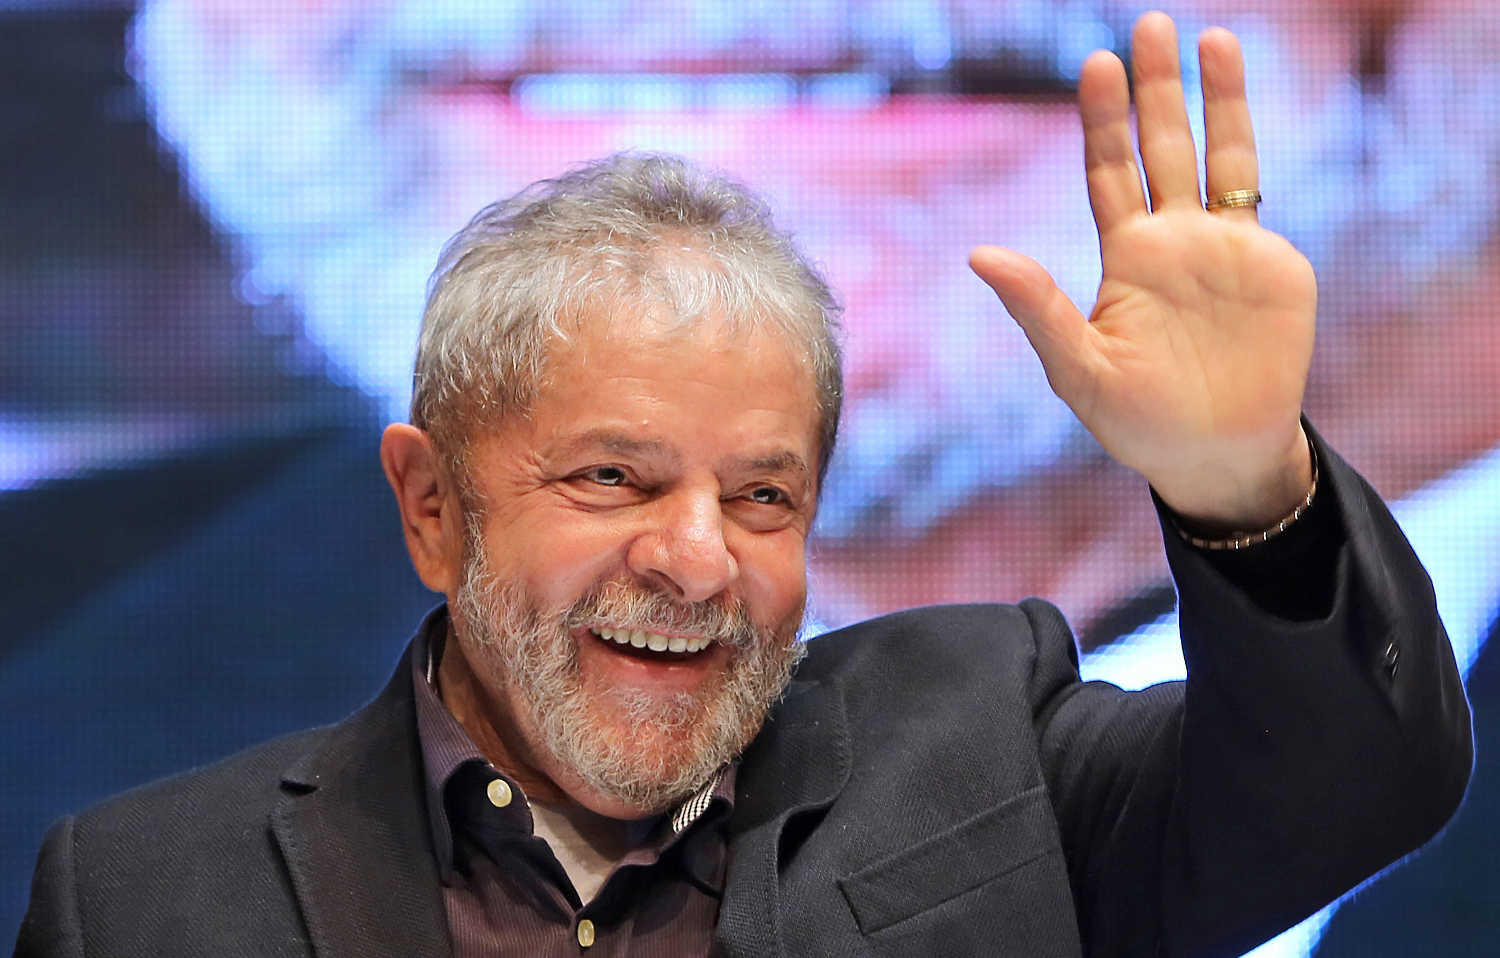 Exames de rotina em Lula deram normais